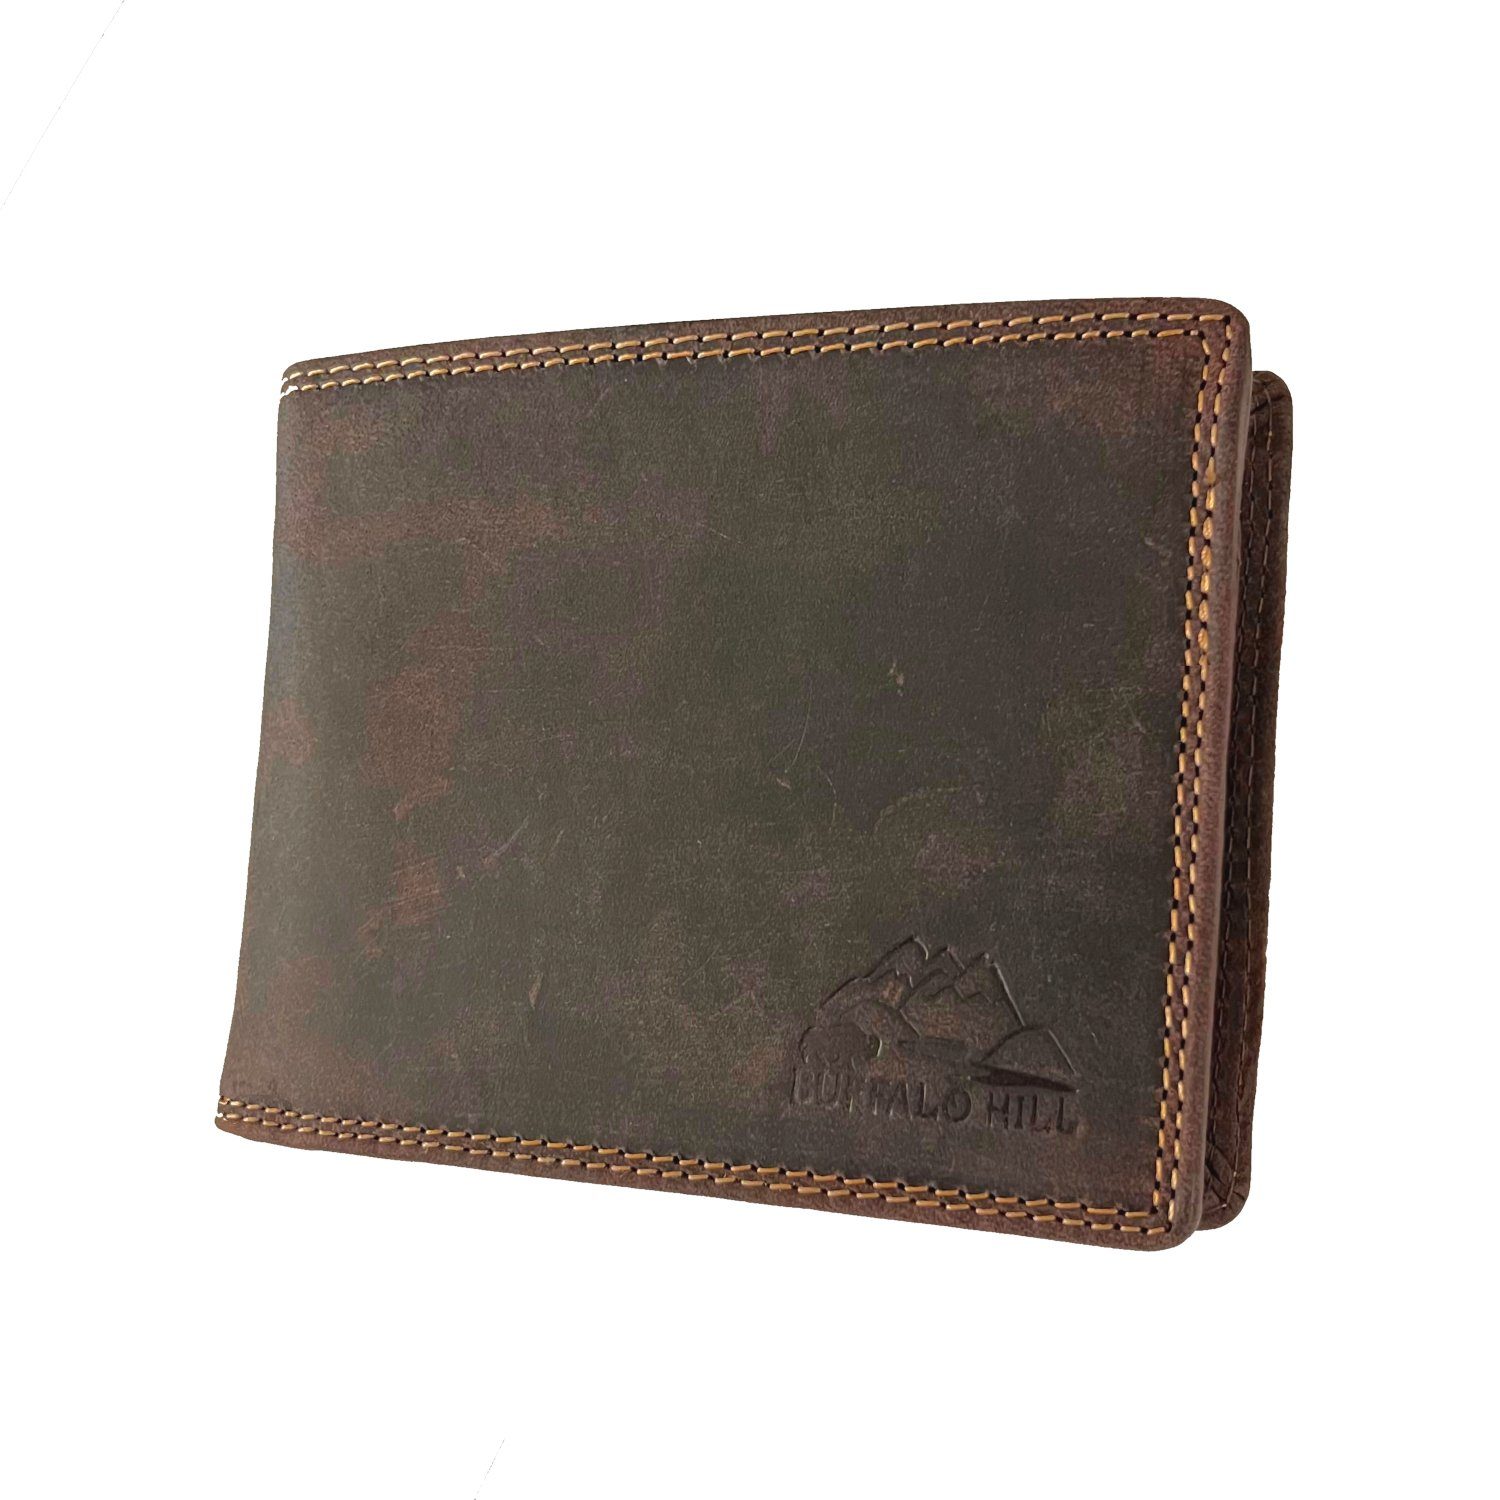 Buffalo Hill Geldbörse >8101< Büffelleder Portemonnaie, integrierter RFID-Schutz, elegantes Wallet mit 8 Kartenfächern in Braun